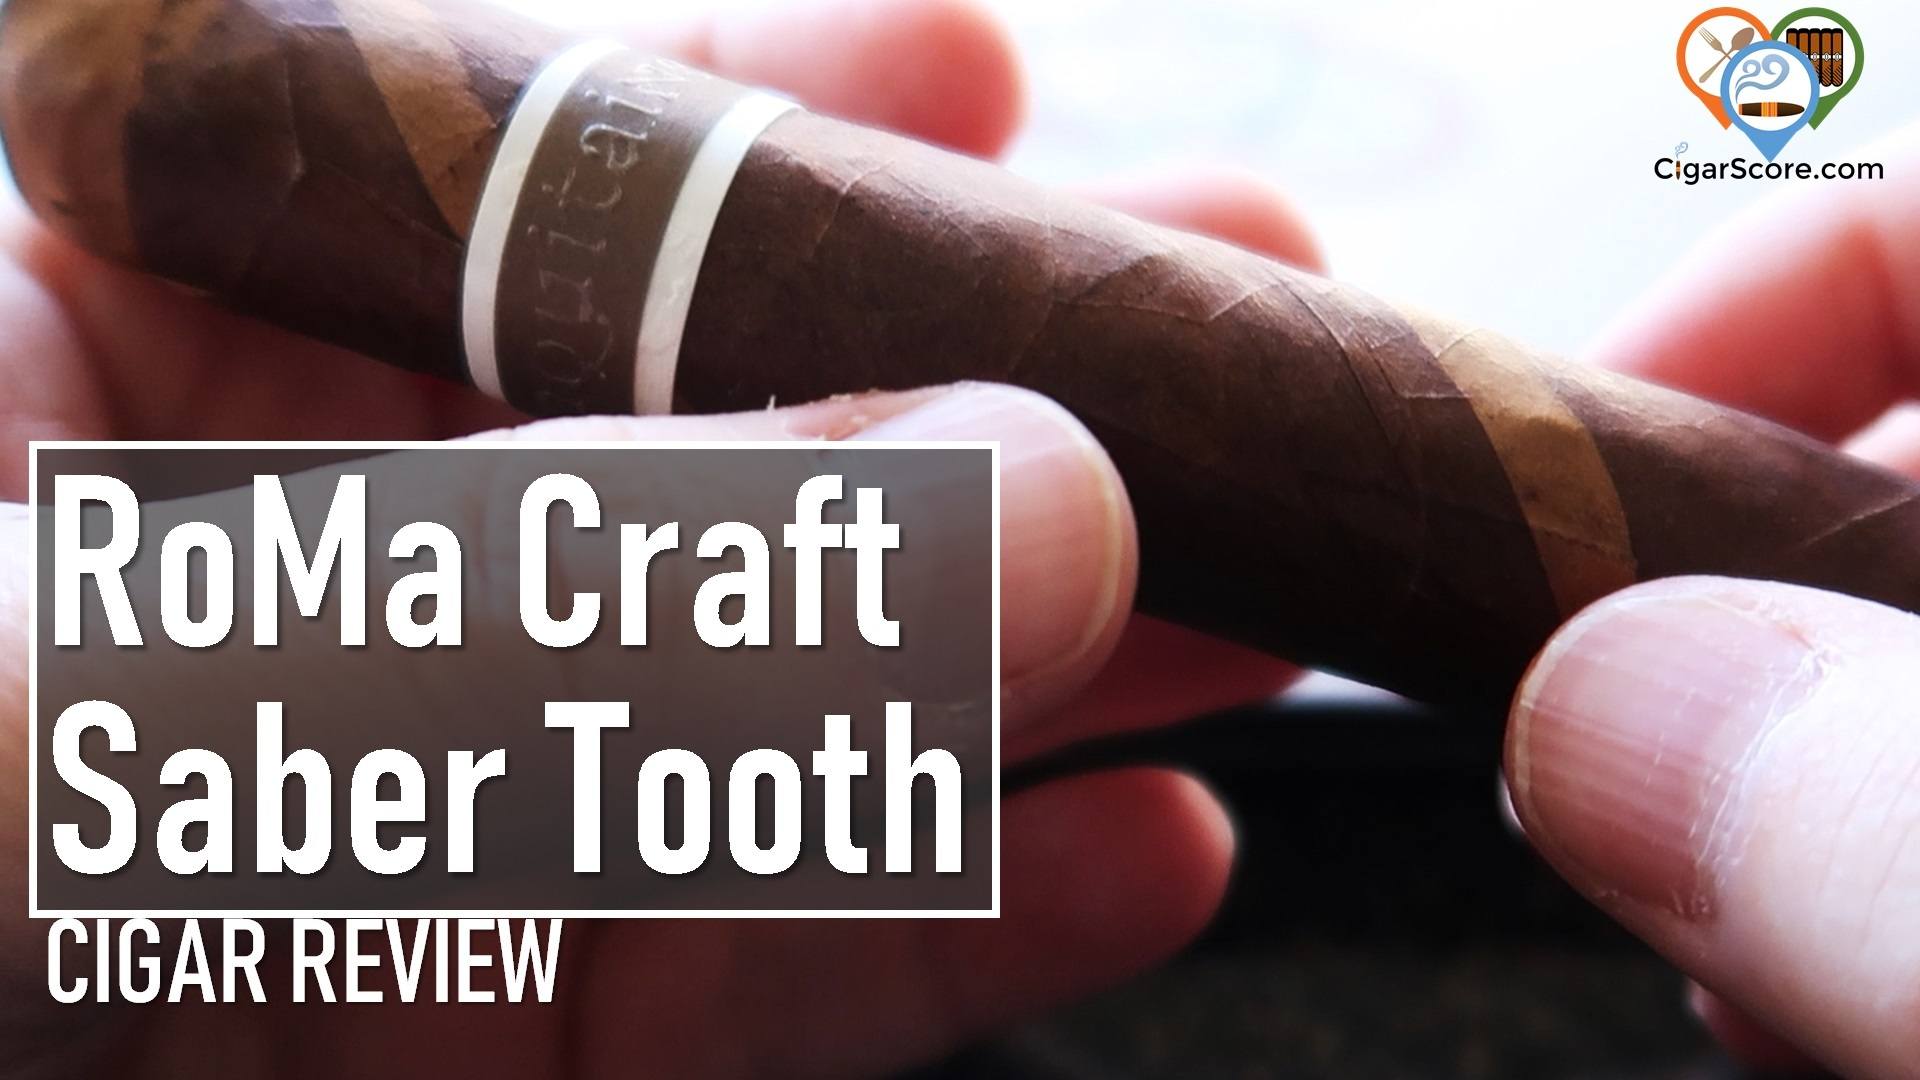 Cigar Review: RoMa Craft Aquitaine EMH Saber Tooth